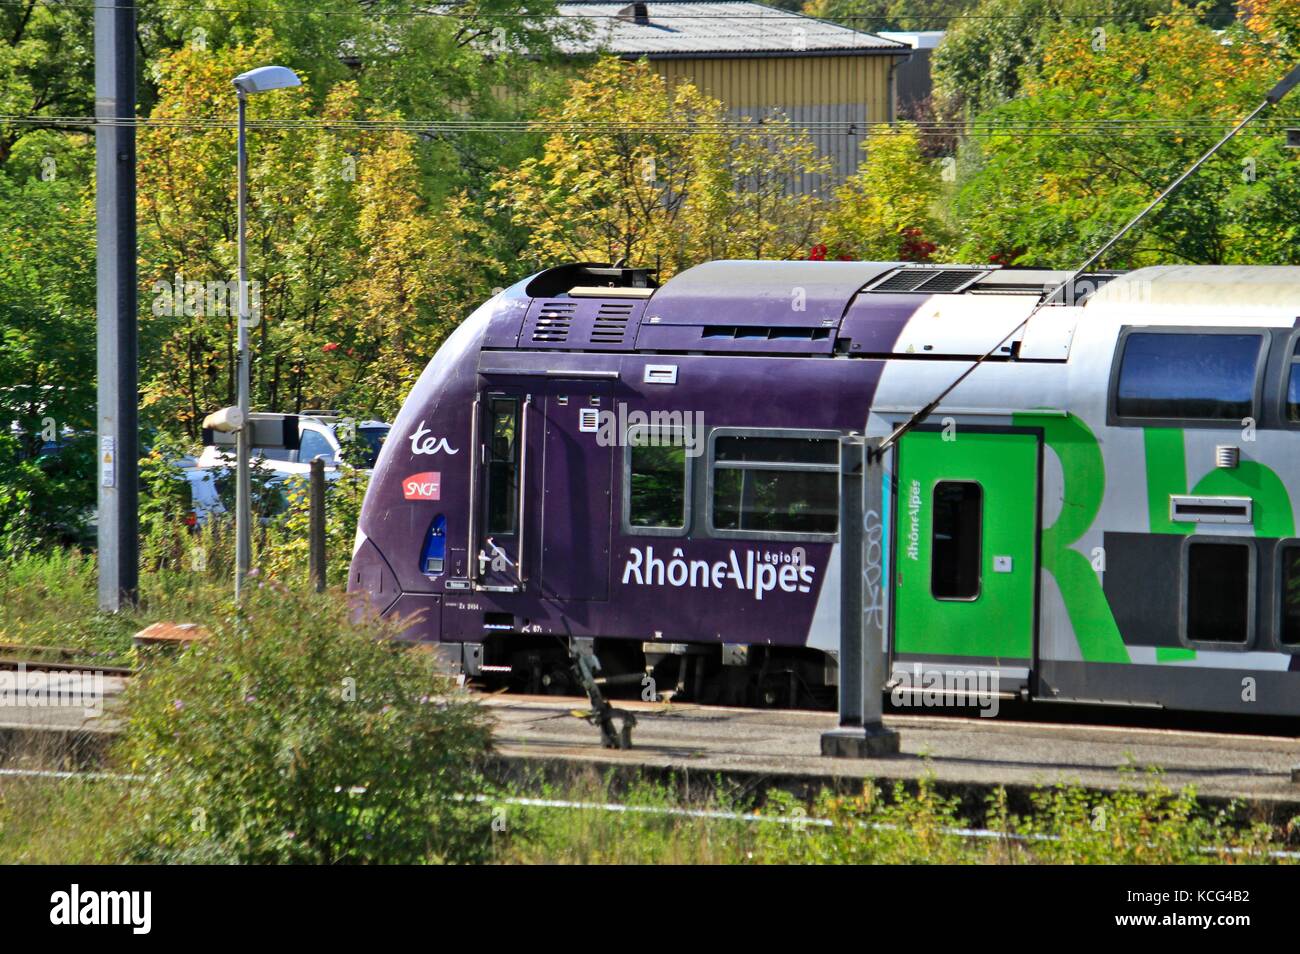 Train régional SNCF, Alstom, entrant dans une gare. Grenoble, Isère, Auvergne Rhône Alpes. Grenoble, FRANCE - 10/04/2017 train régional TER de Banque D'Images